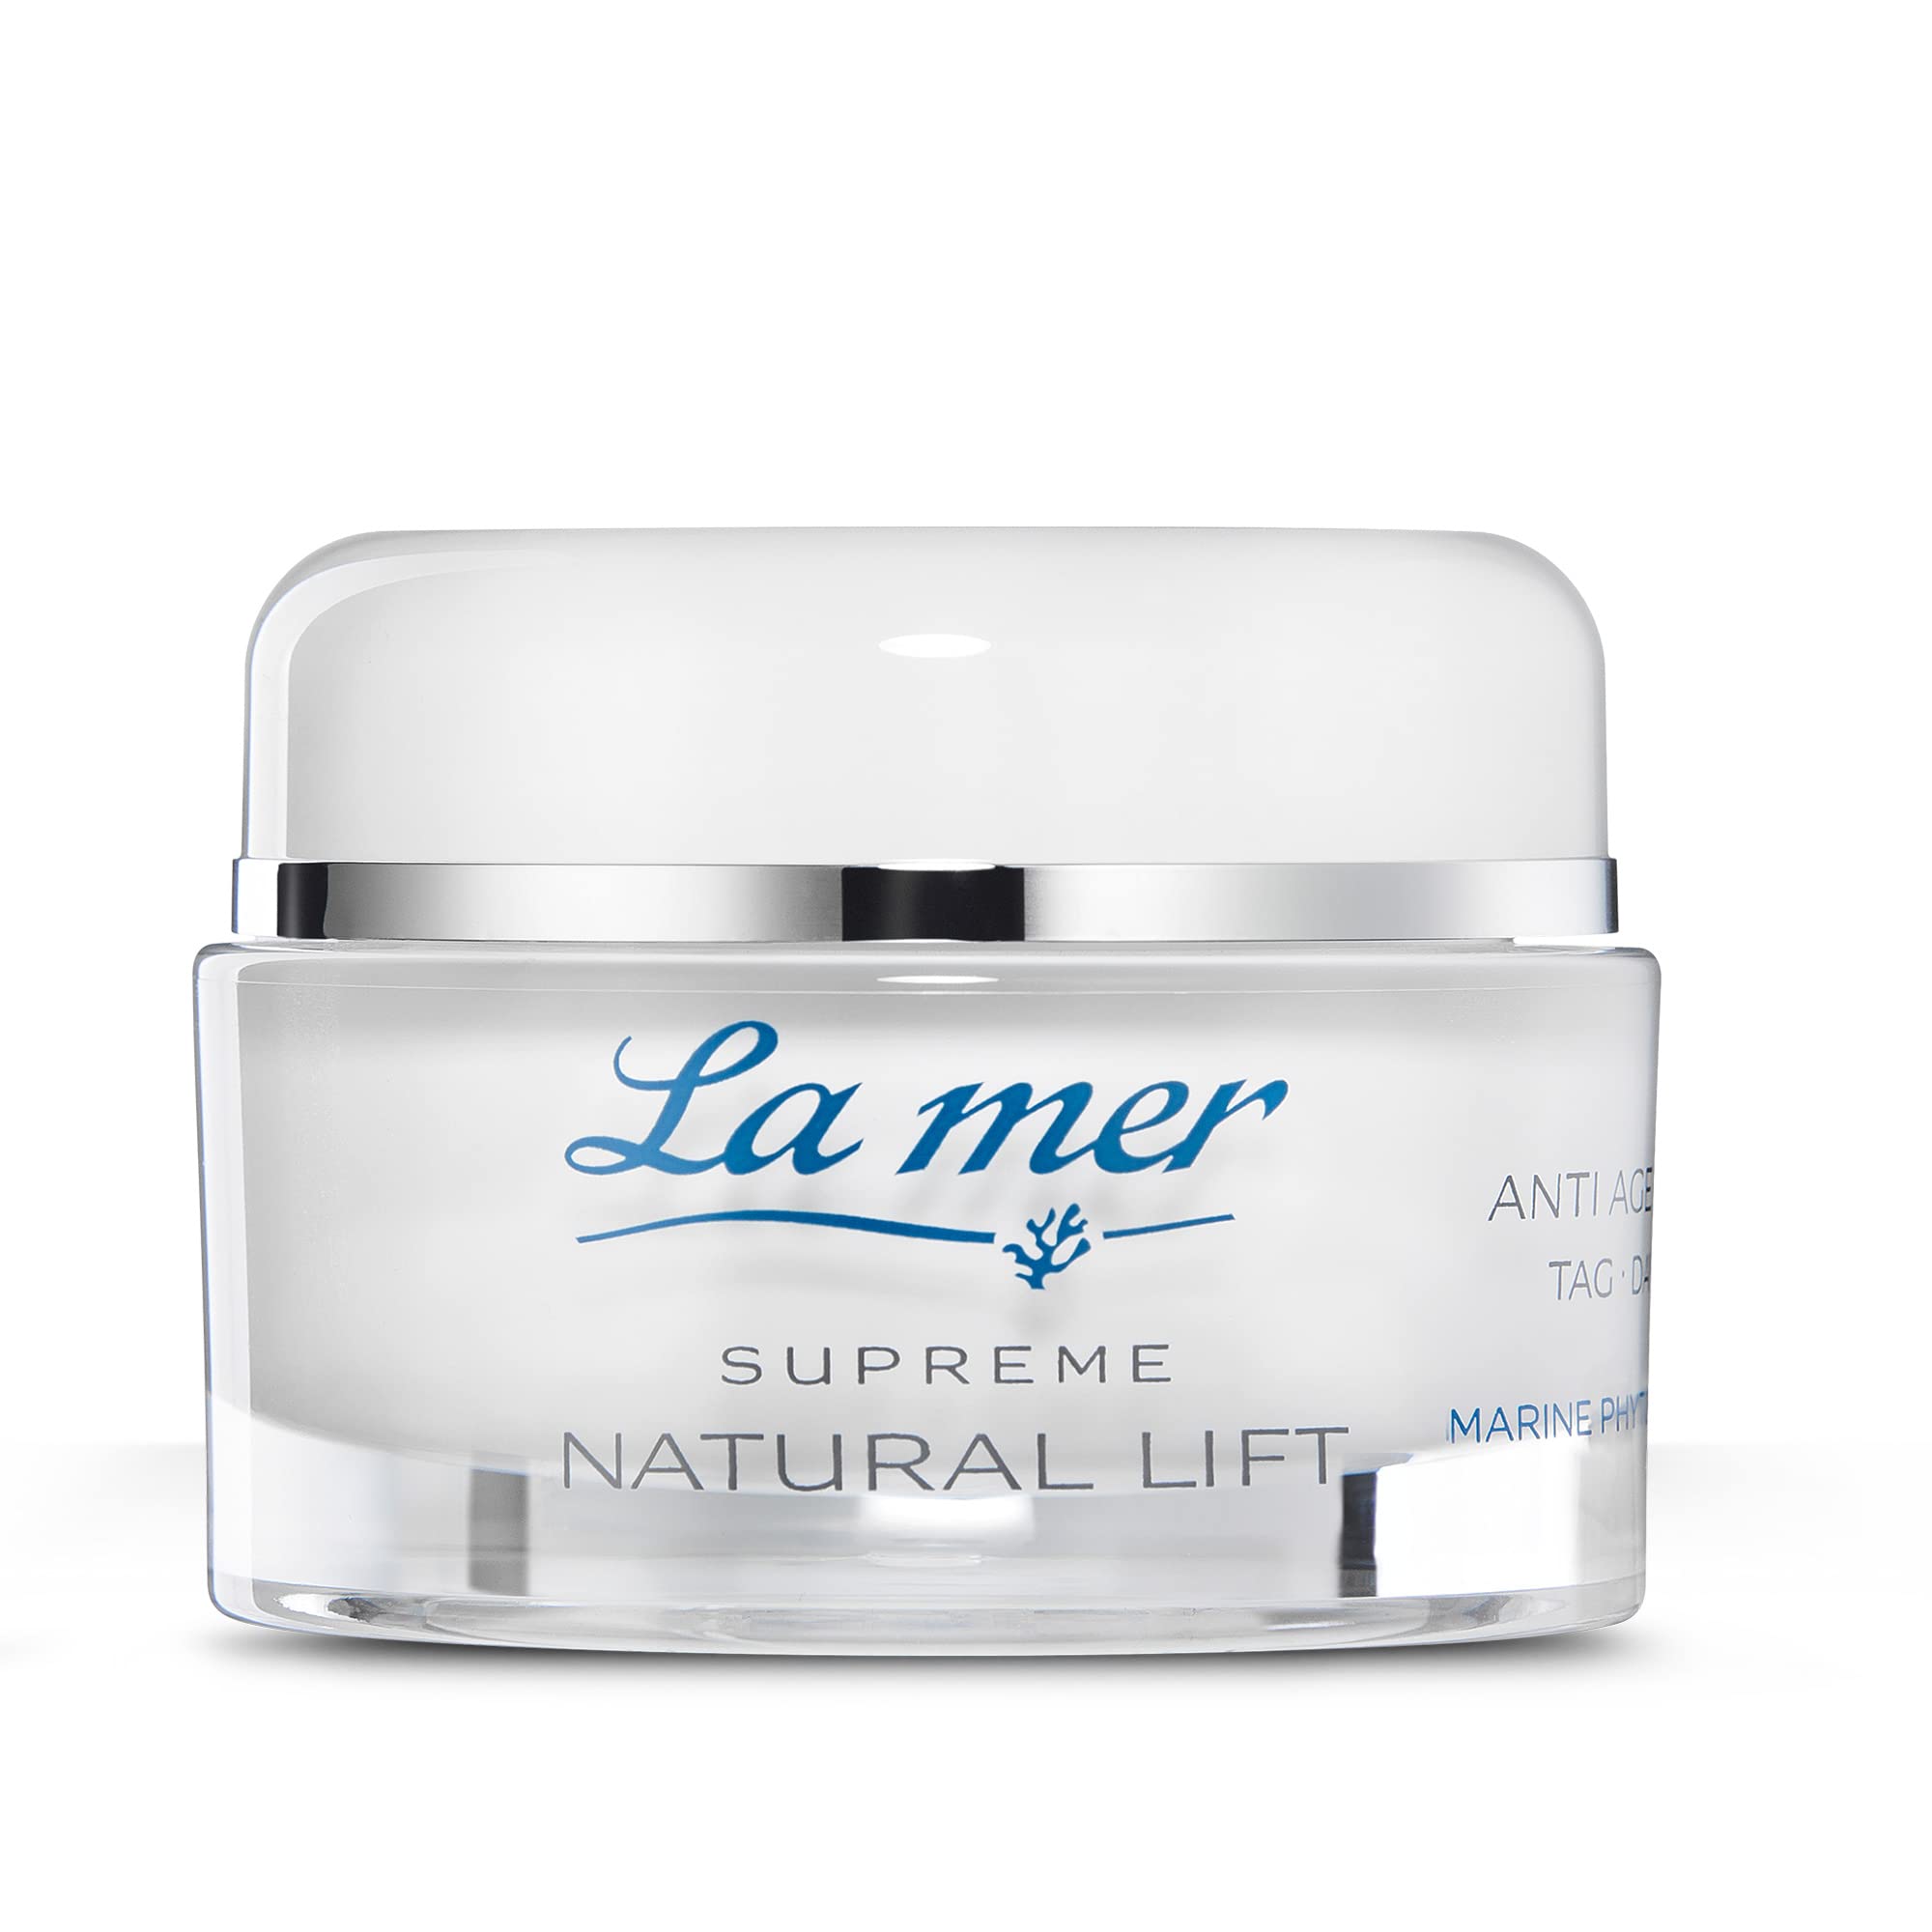 La mer Supreme Natural Lift Anti Age Cream Tag - Gesichtscreme für den Tag - Straffende und glättende Wirkung - Tagescreme zur Reduktion der Falten - Für alle Hauttypen geeignet - 50 ml